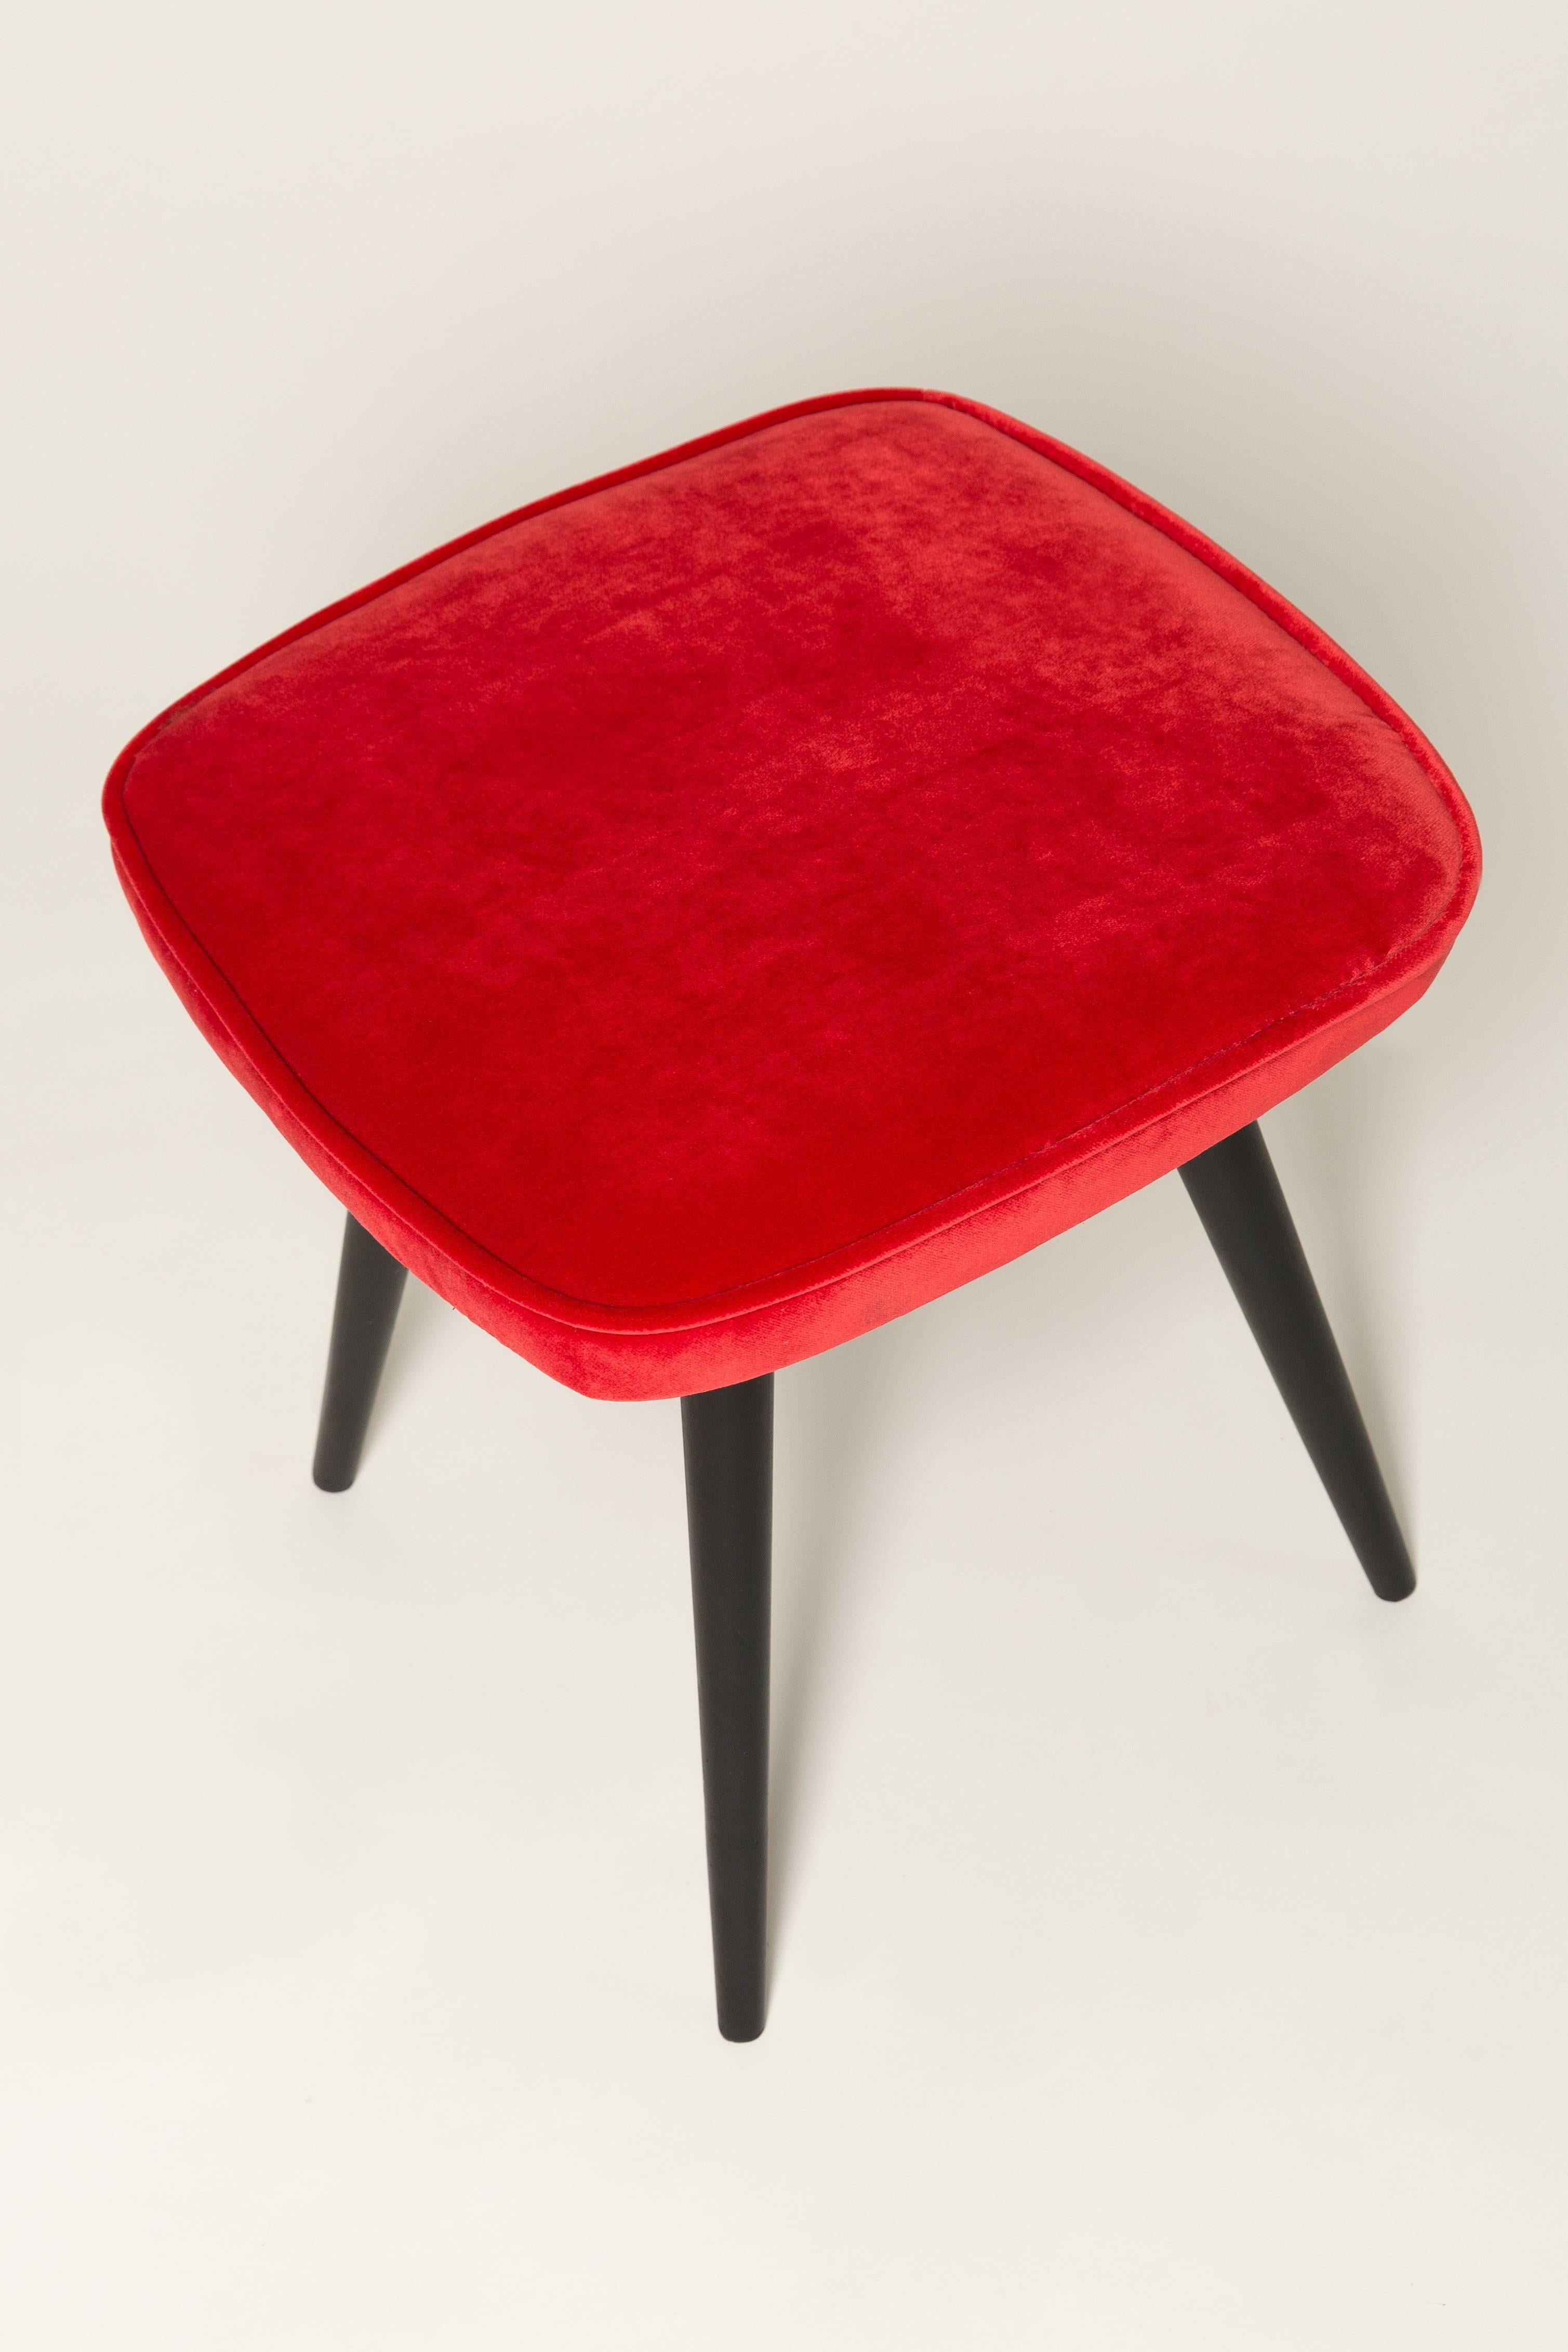 Hocker aus der Zeit um die 1960er und 1970er Jahre. Schöne rote Samtpolsterung. Der Hocker besteht aus einem gepolsterten Teil, einer Sitzfläche und sich nach unten verjüngenden Holzbeinen, die für den Stil der 1960er Jahre charakteristisch sind.